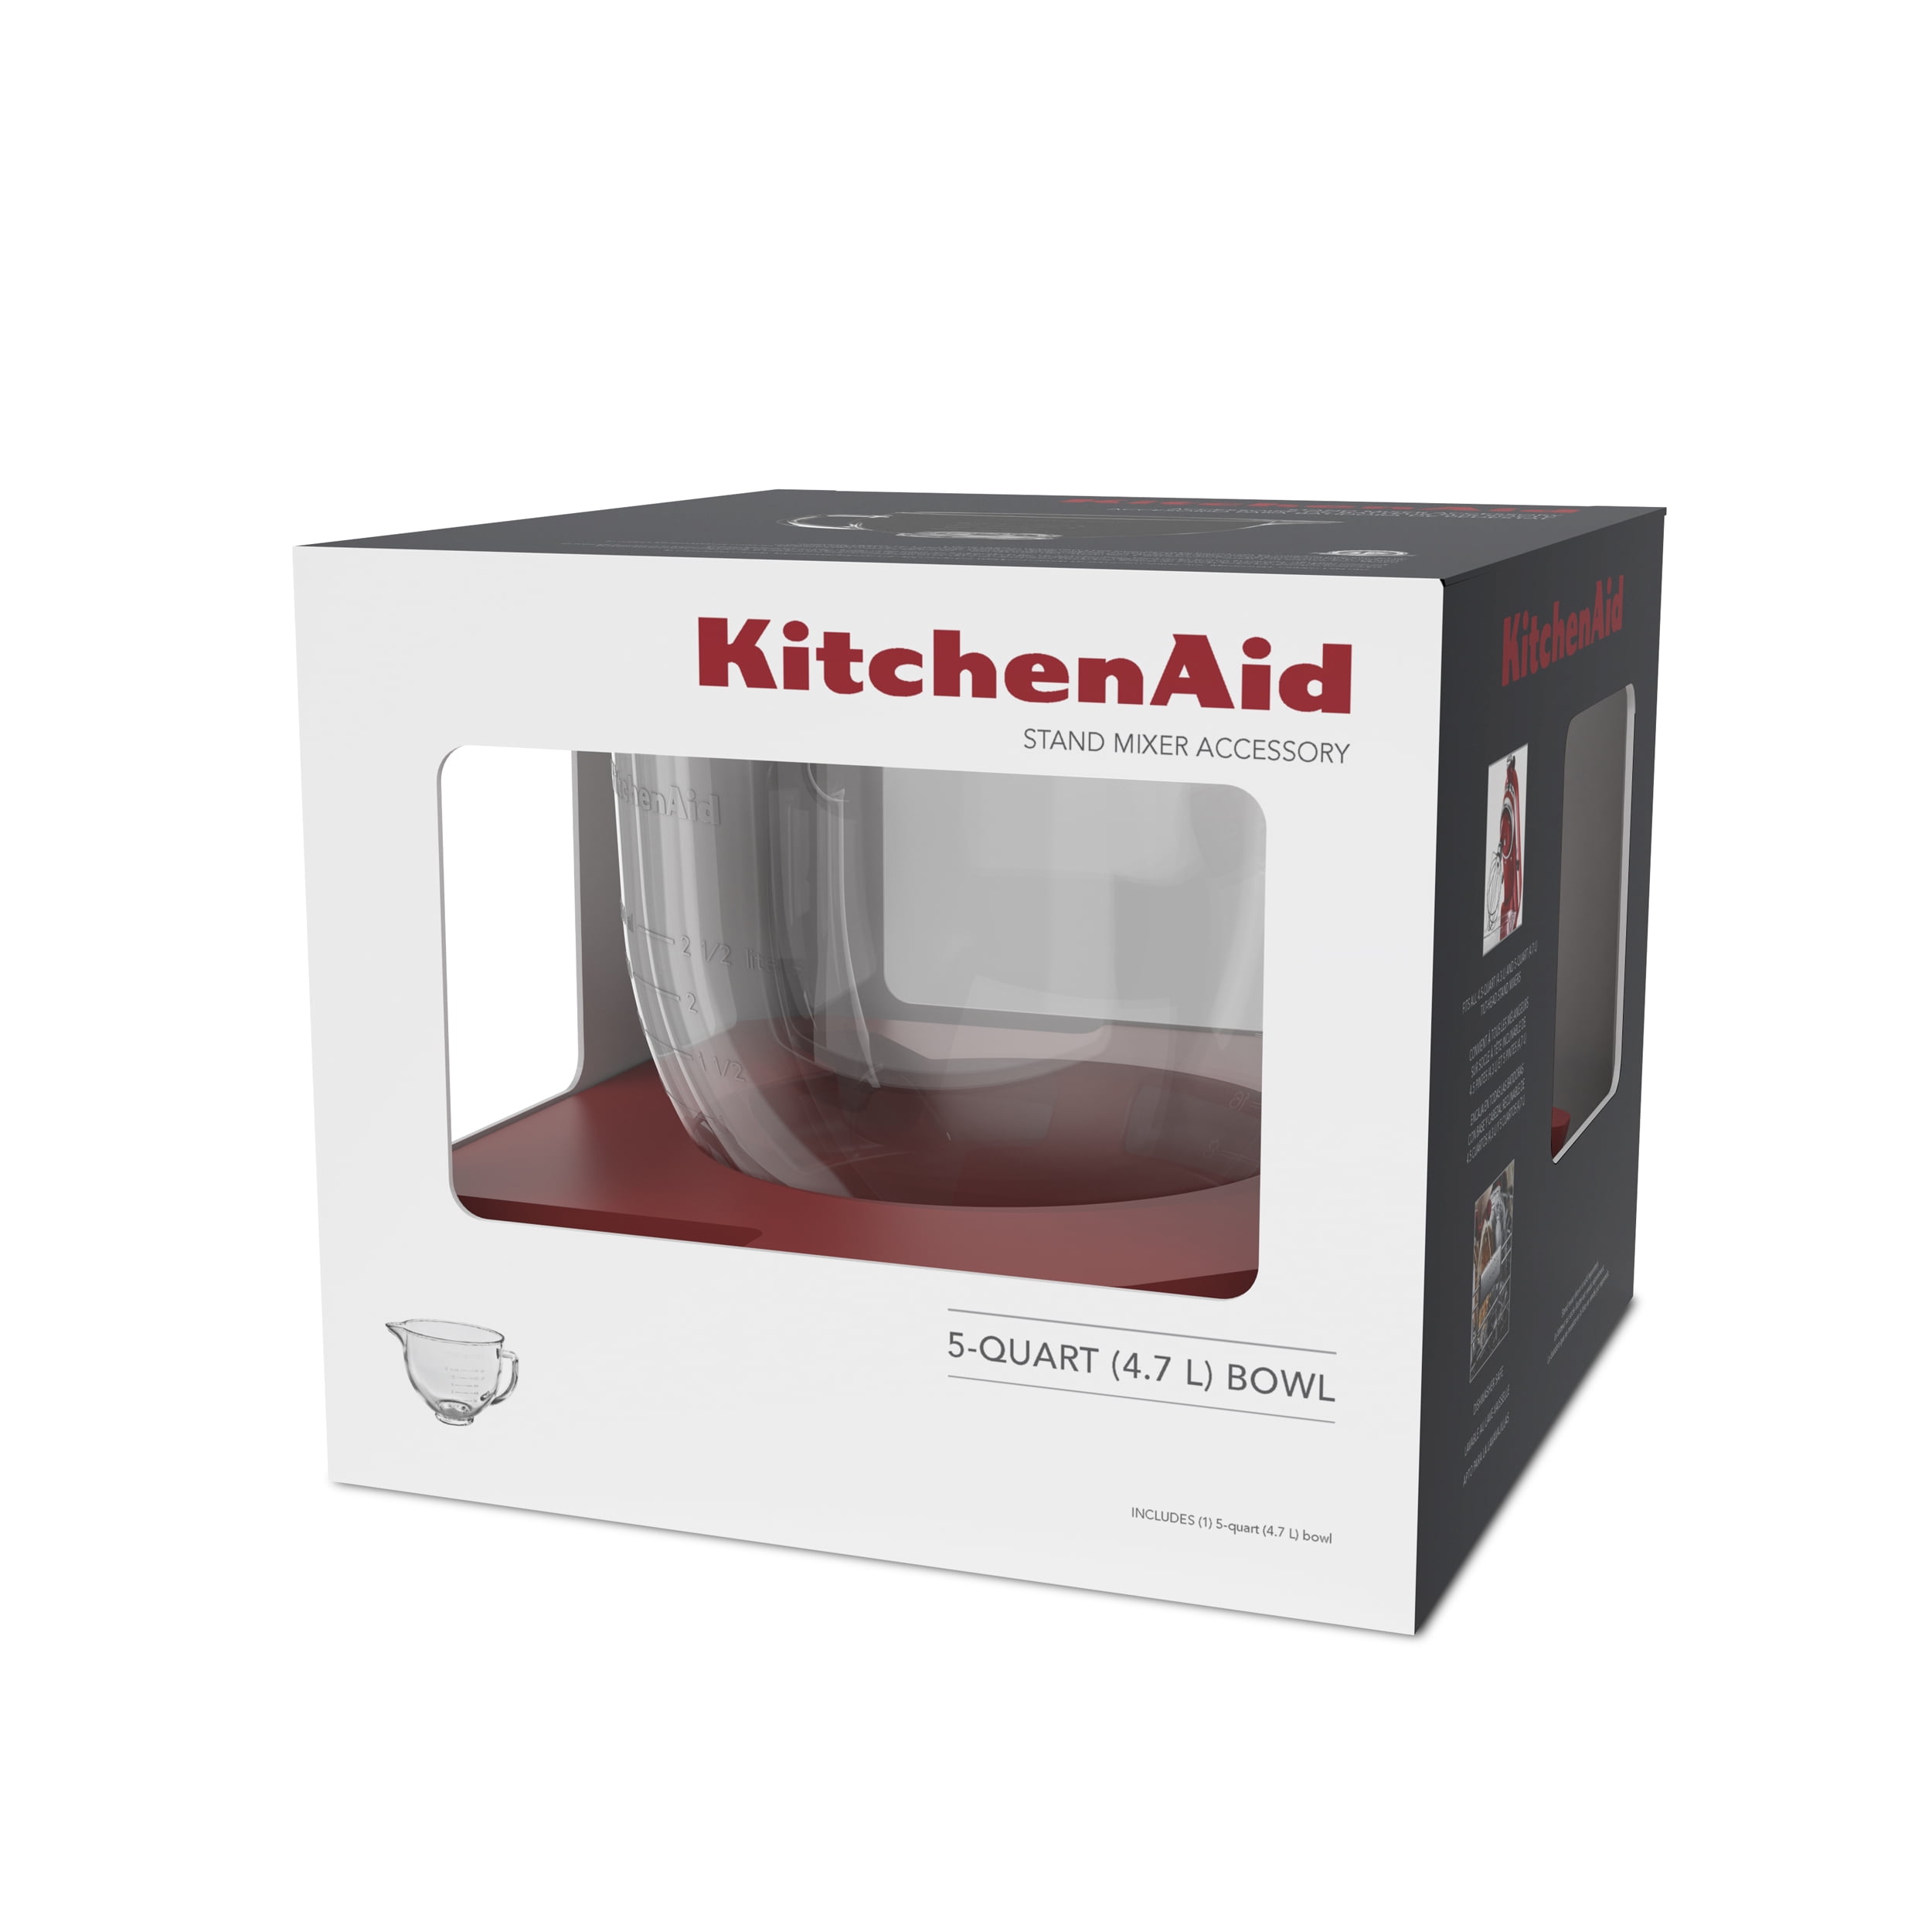 KitchenAid 5-qt Tilt-Head Glass Bowl with Lid 